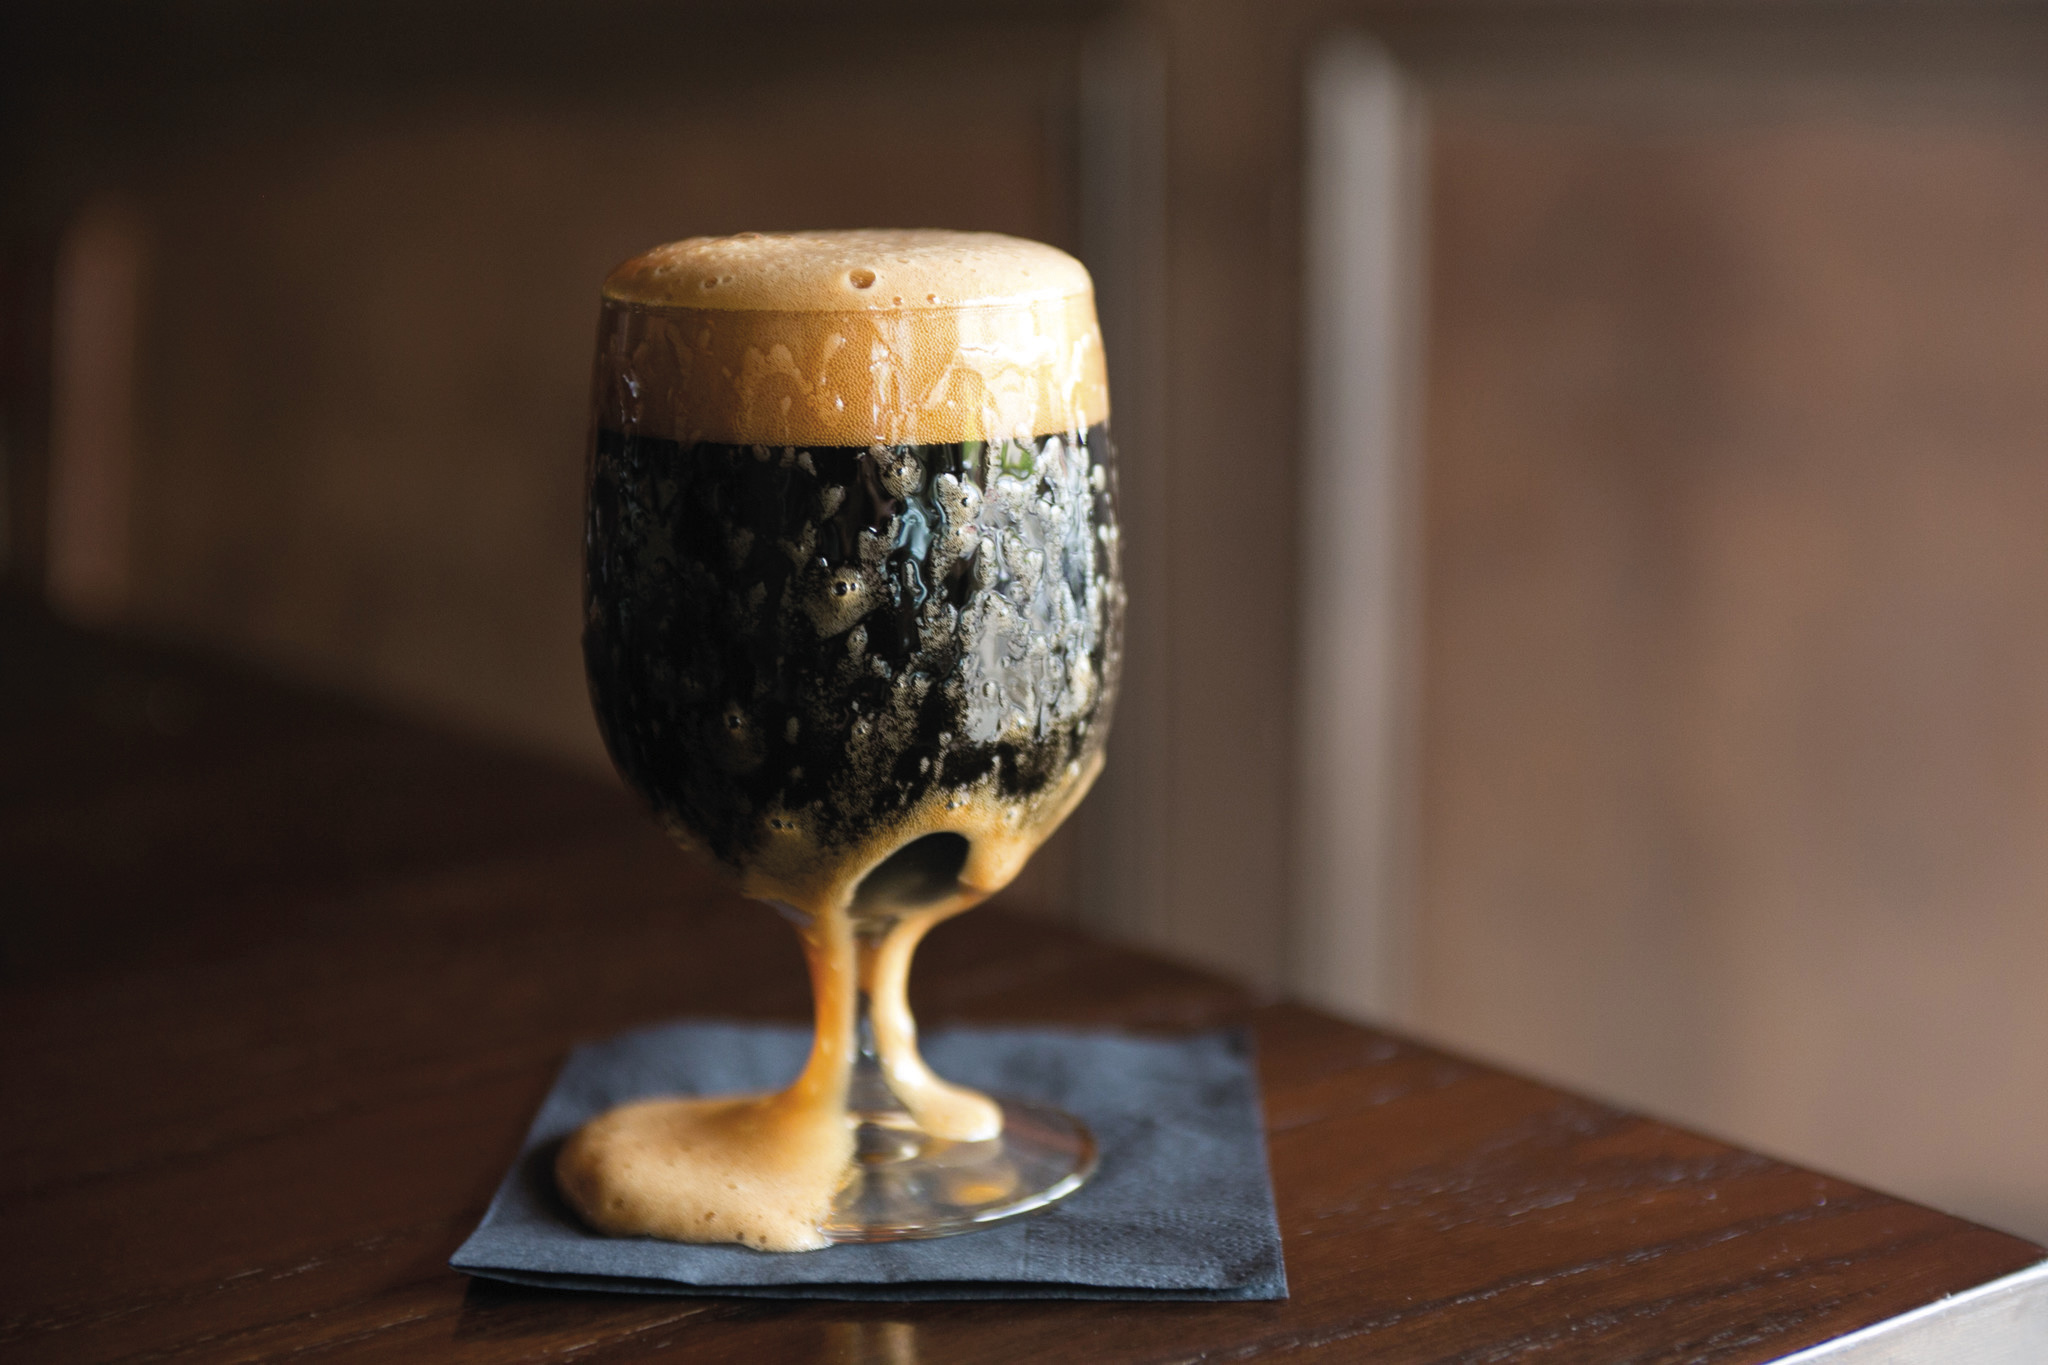 布魯克林黑巧克力黑啤酒，採用了 6 種麥芽釀造，帶有烘焙咖啡的香氣。